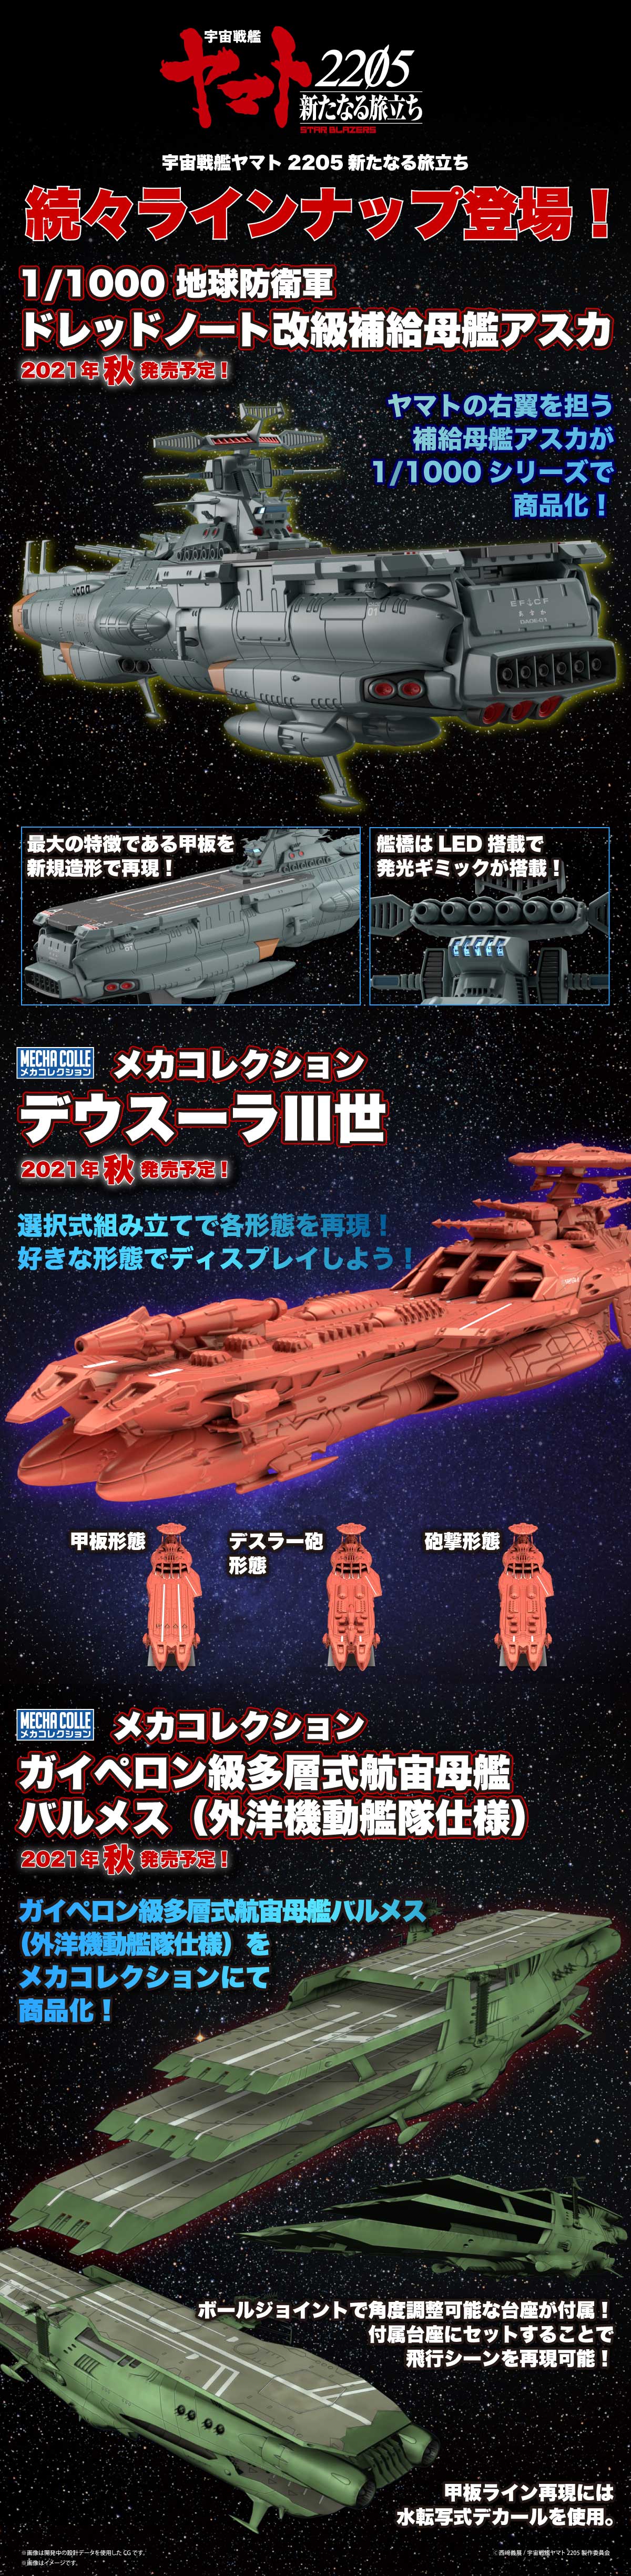 宇宙戦艦ヤマト キャラクタープラモデル バンダイ ホビーサイト